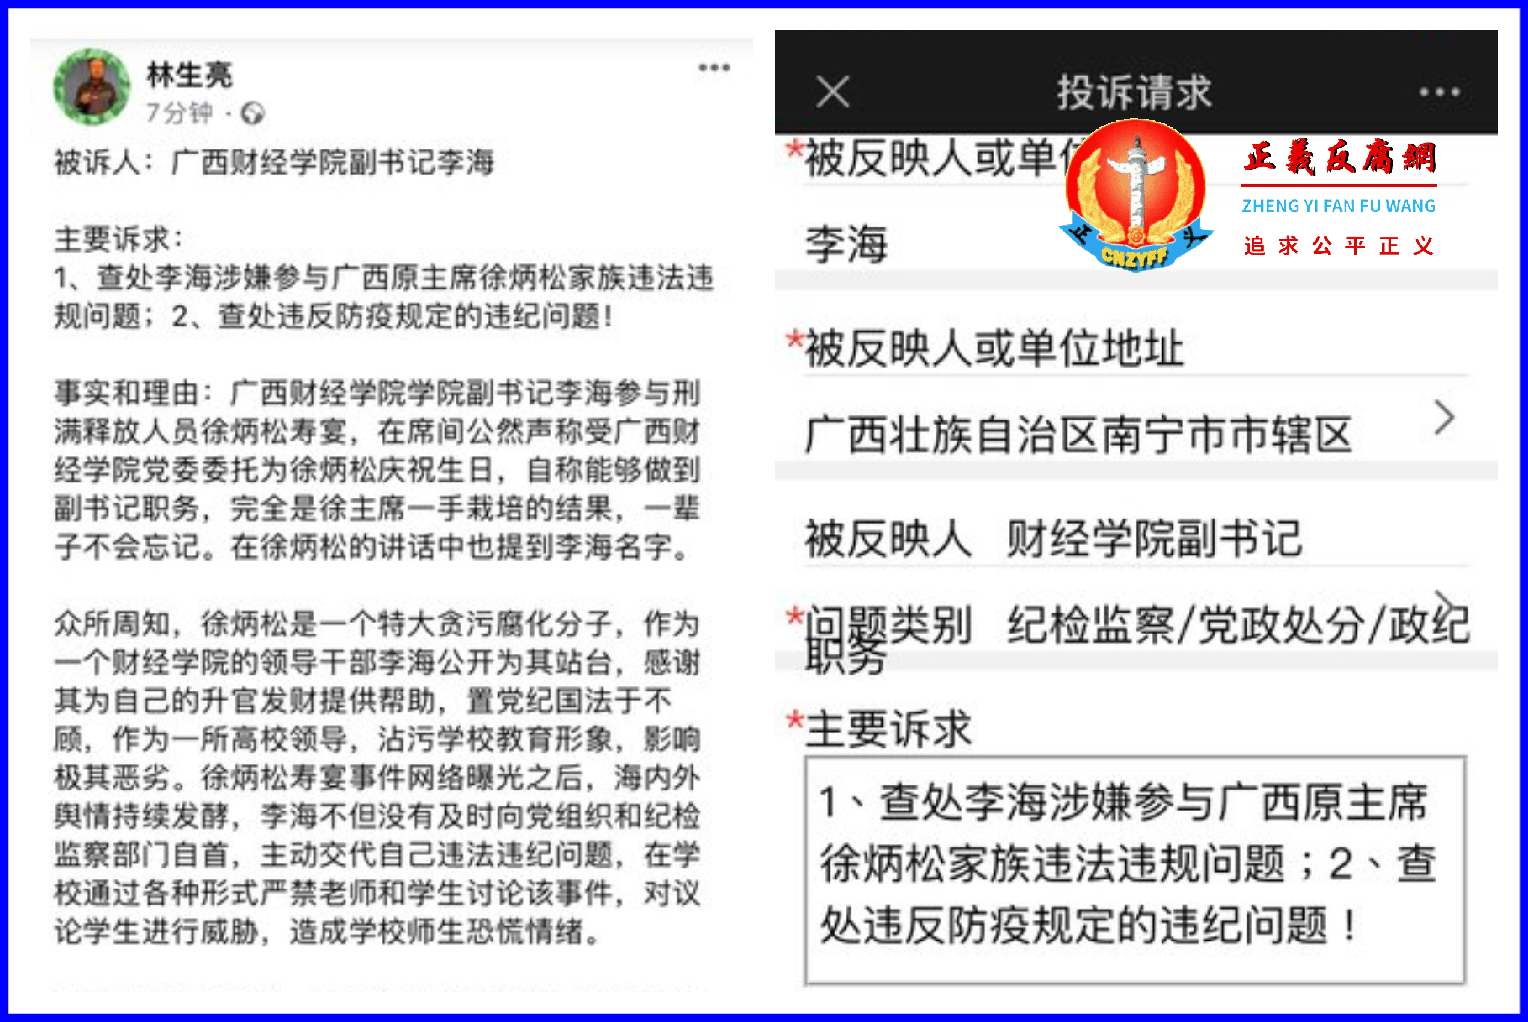 投诉人林生亮在国务院、领导人留言等网页上投诉李海。.png